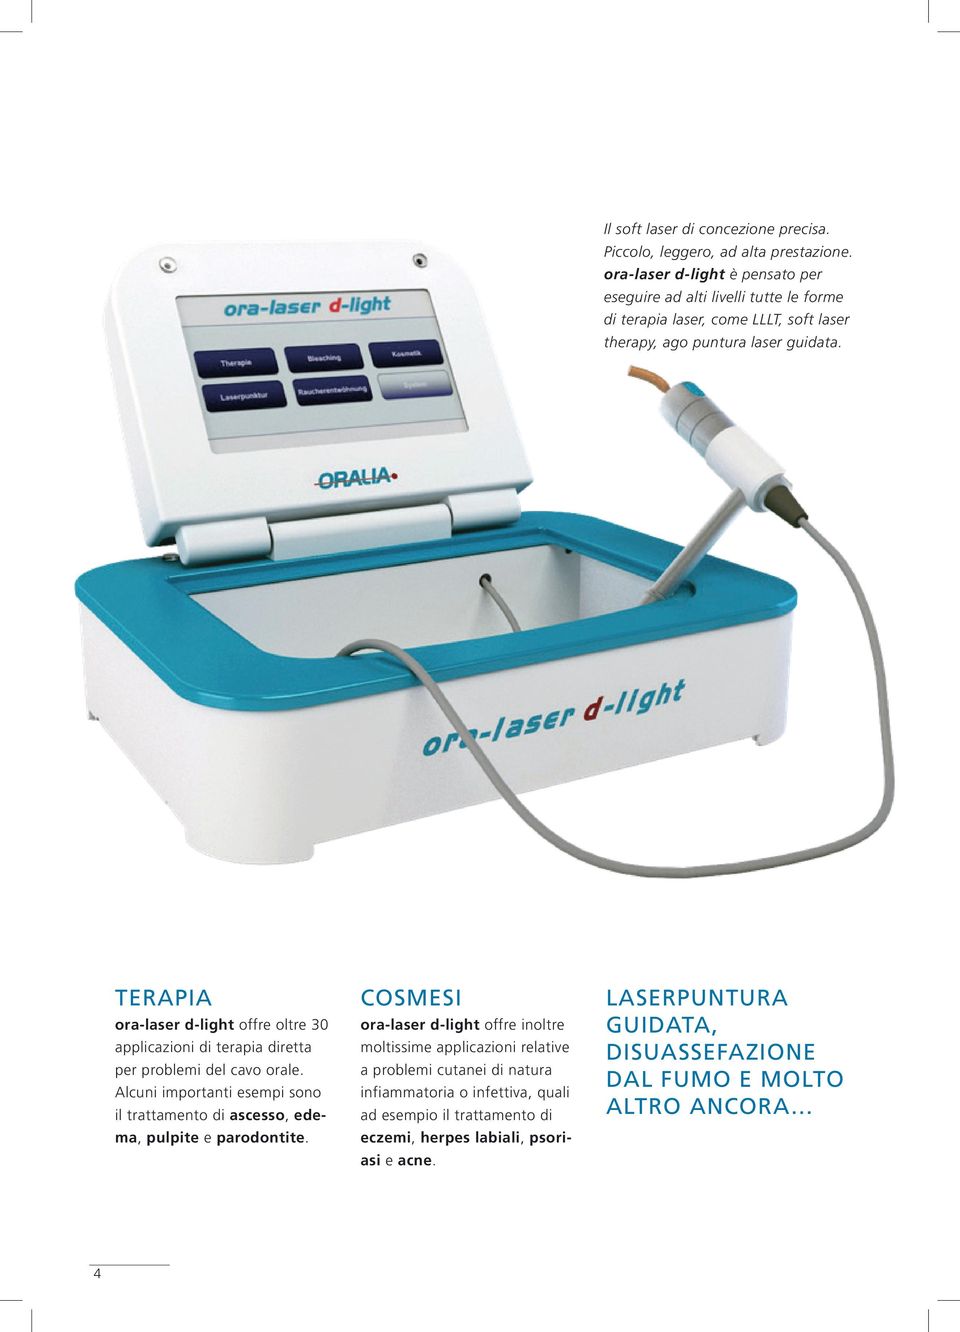 TERAPIA COSMESI LASERPUNTURA ora-laser d-light offre oltre 30 applicazioni di terapia diretta per problemi del cavo orale.